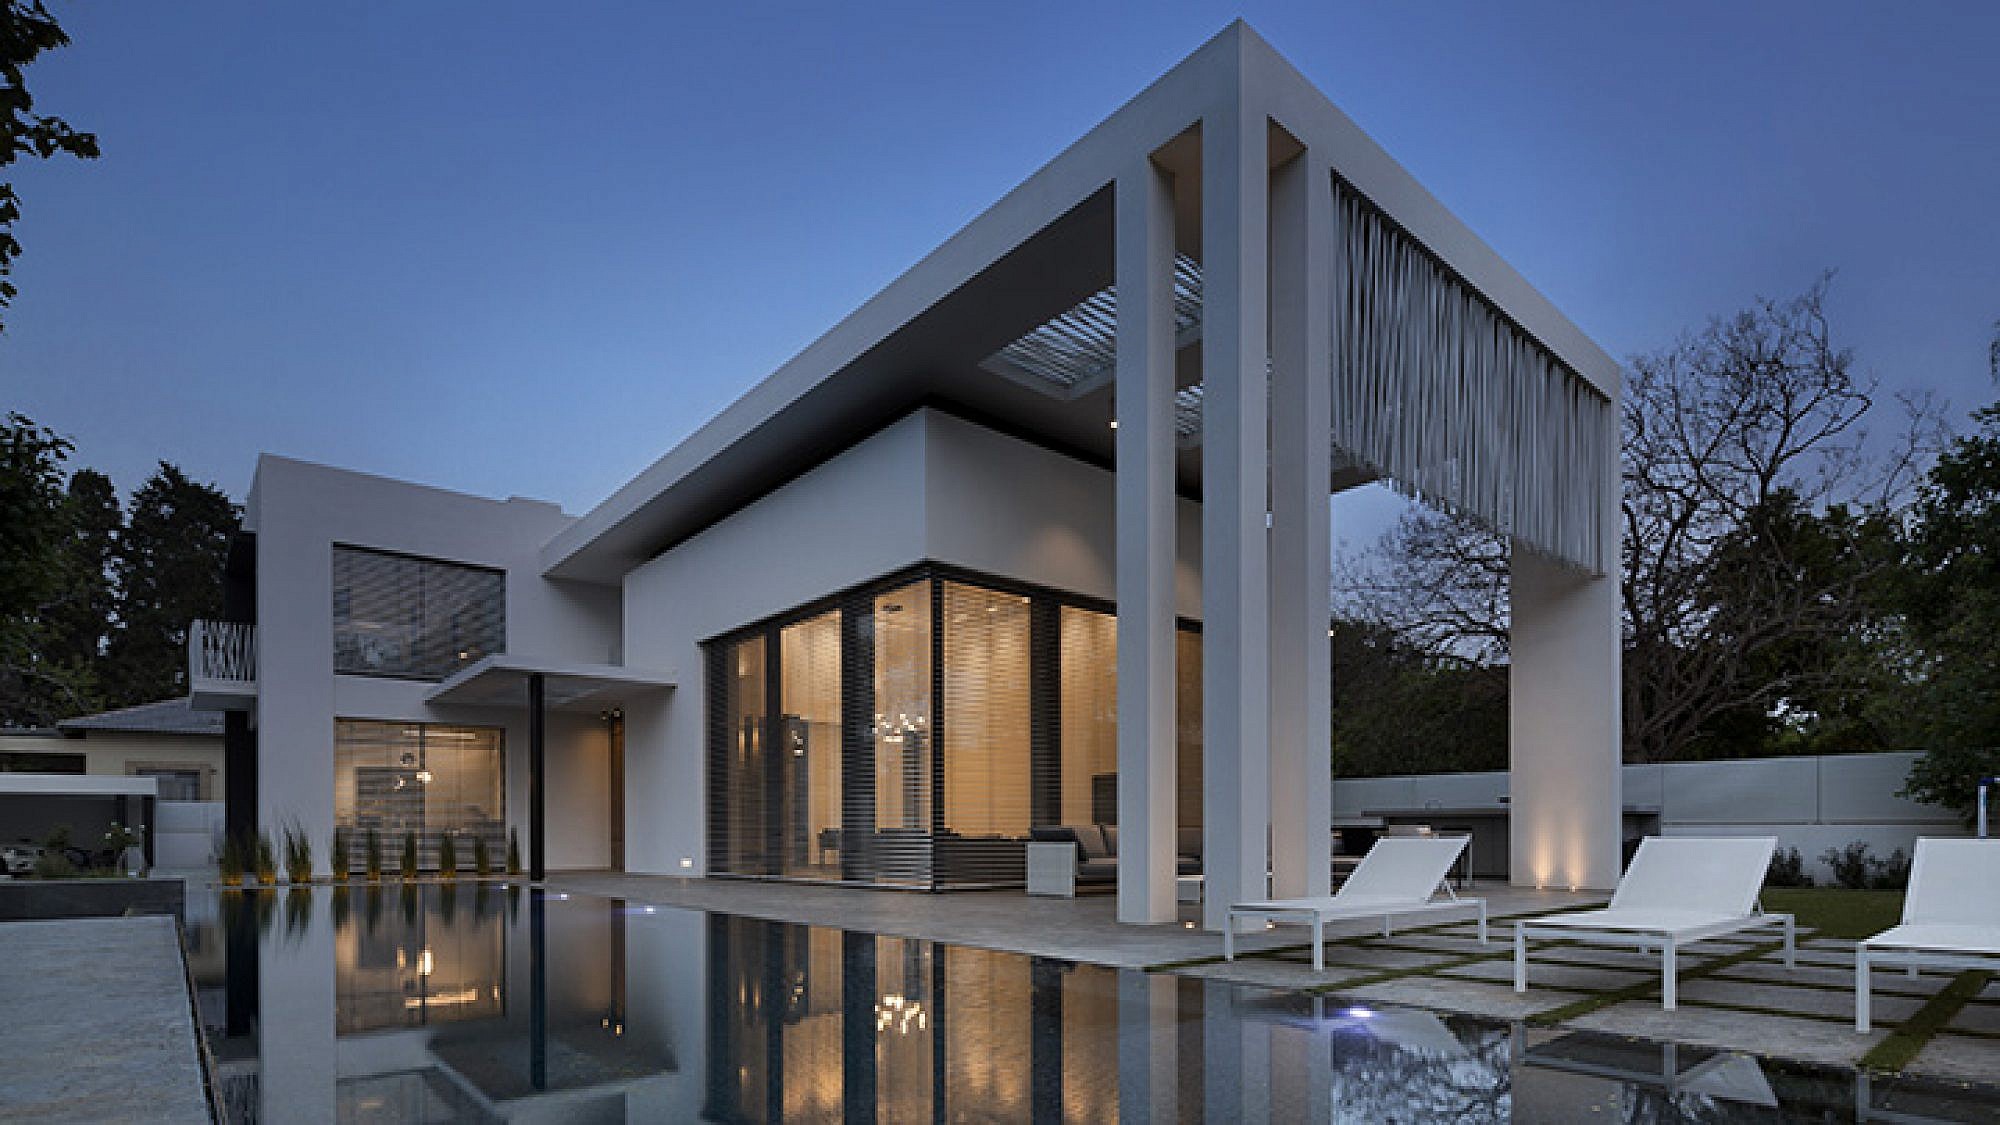 בית גדול בעיצוב נקי: חזיתות לבנות ועמודים ישרים עם מסך הצללה פיסולי ממוטות פלדה שמוסיף עניין | צילום: אסף פינצ'וק